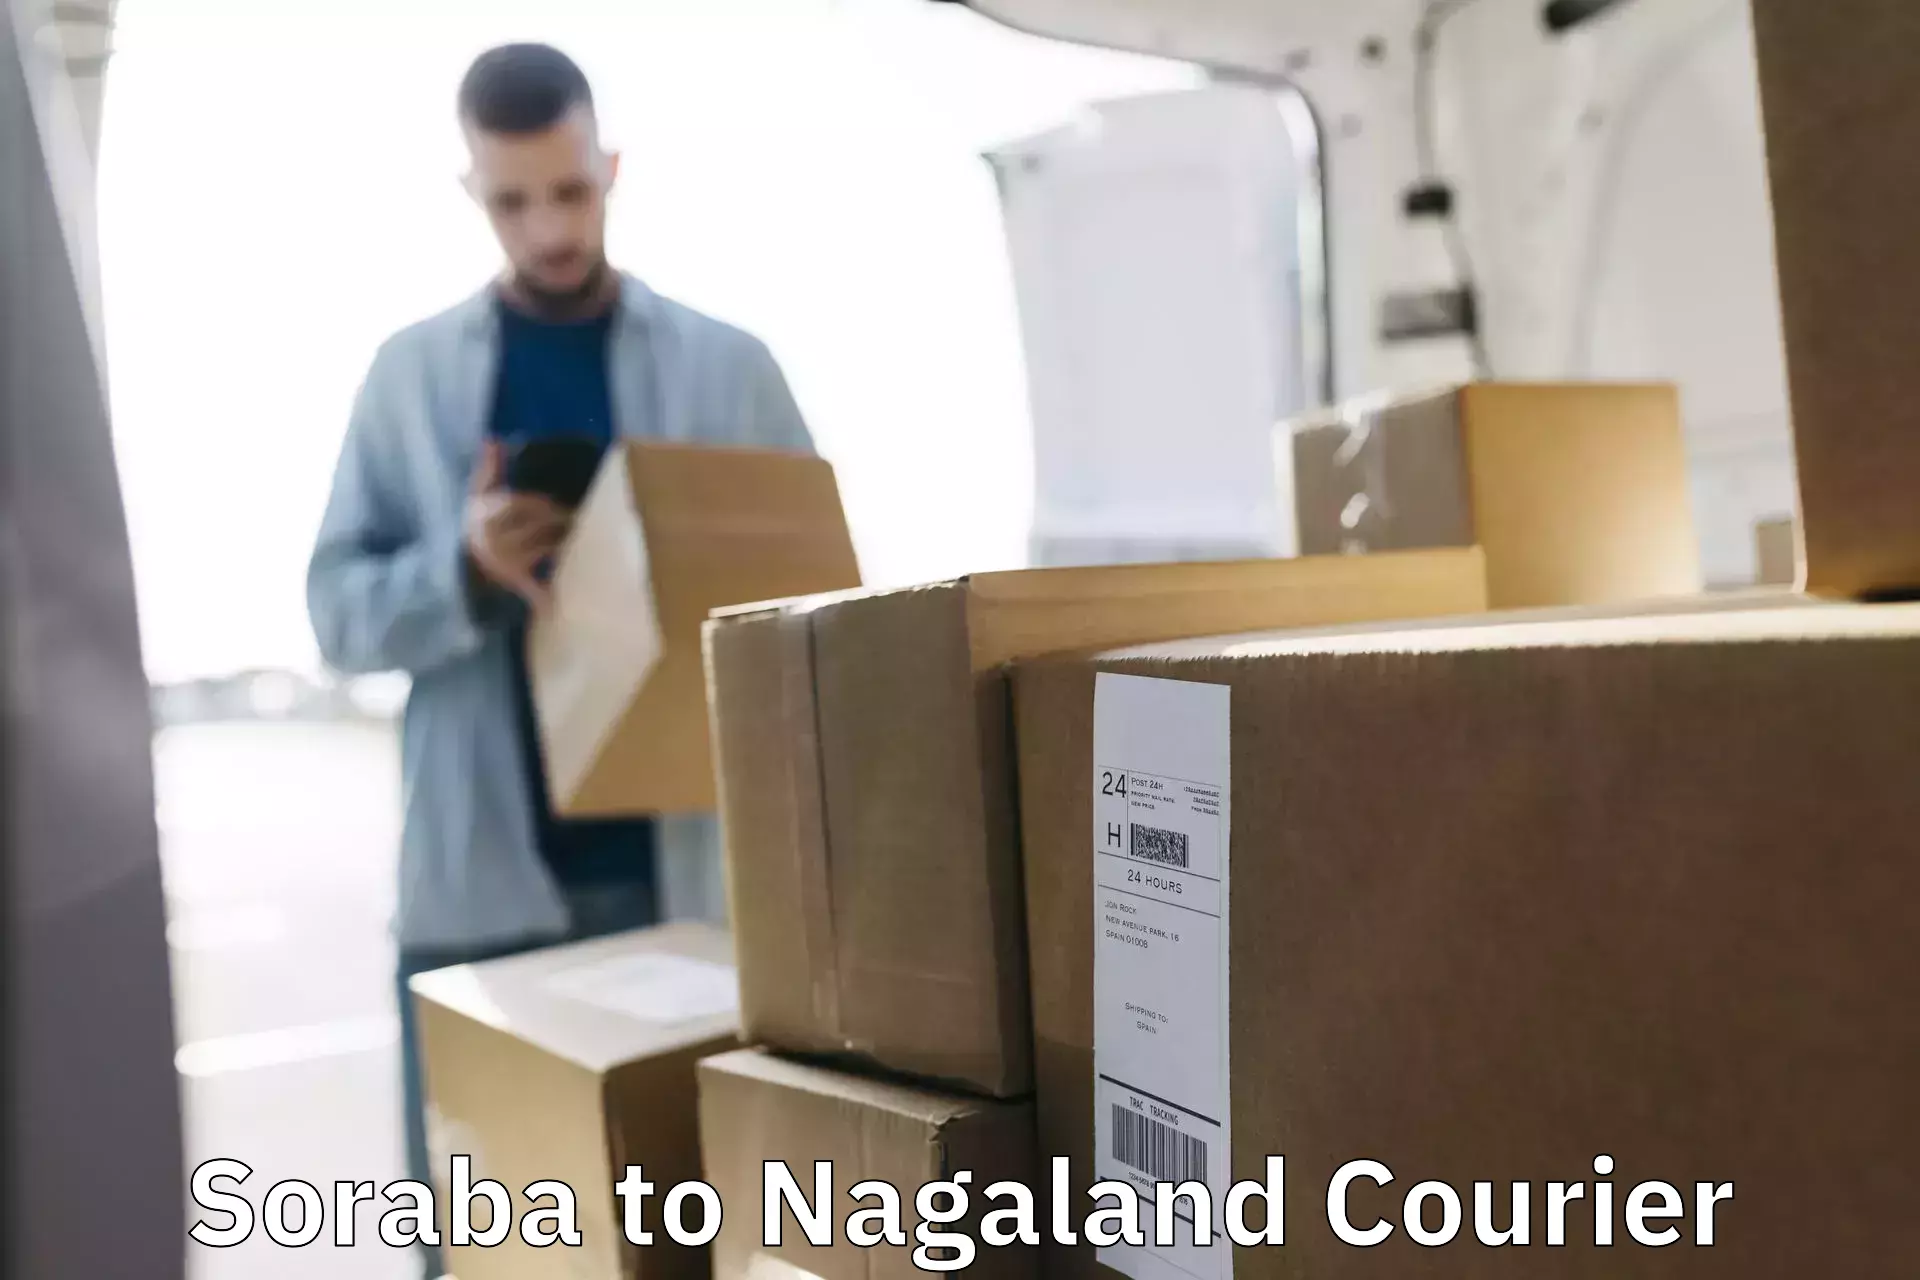 Modern parcel services Soraba to NIT Nagaland